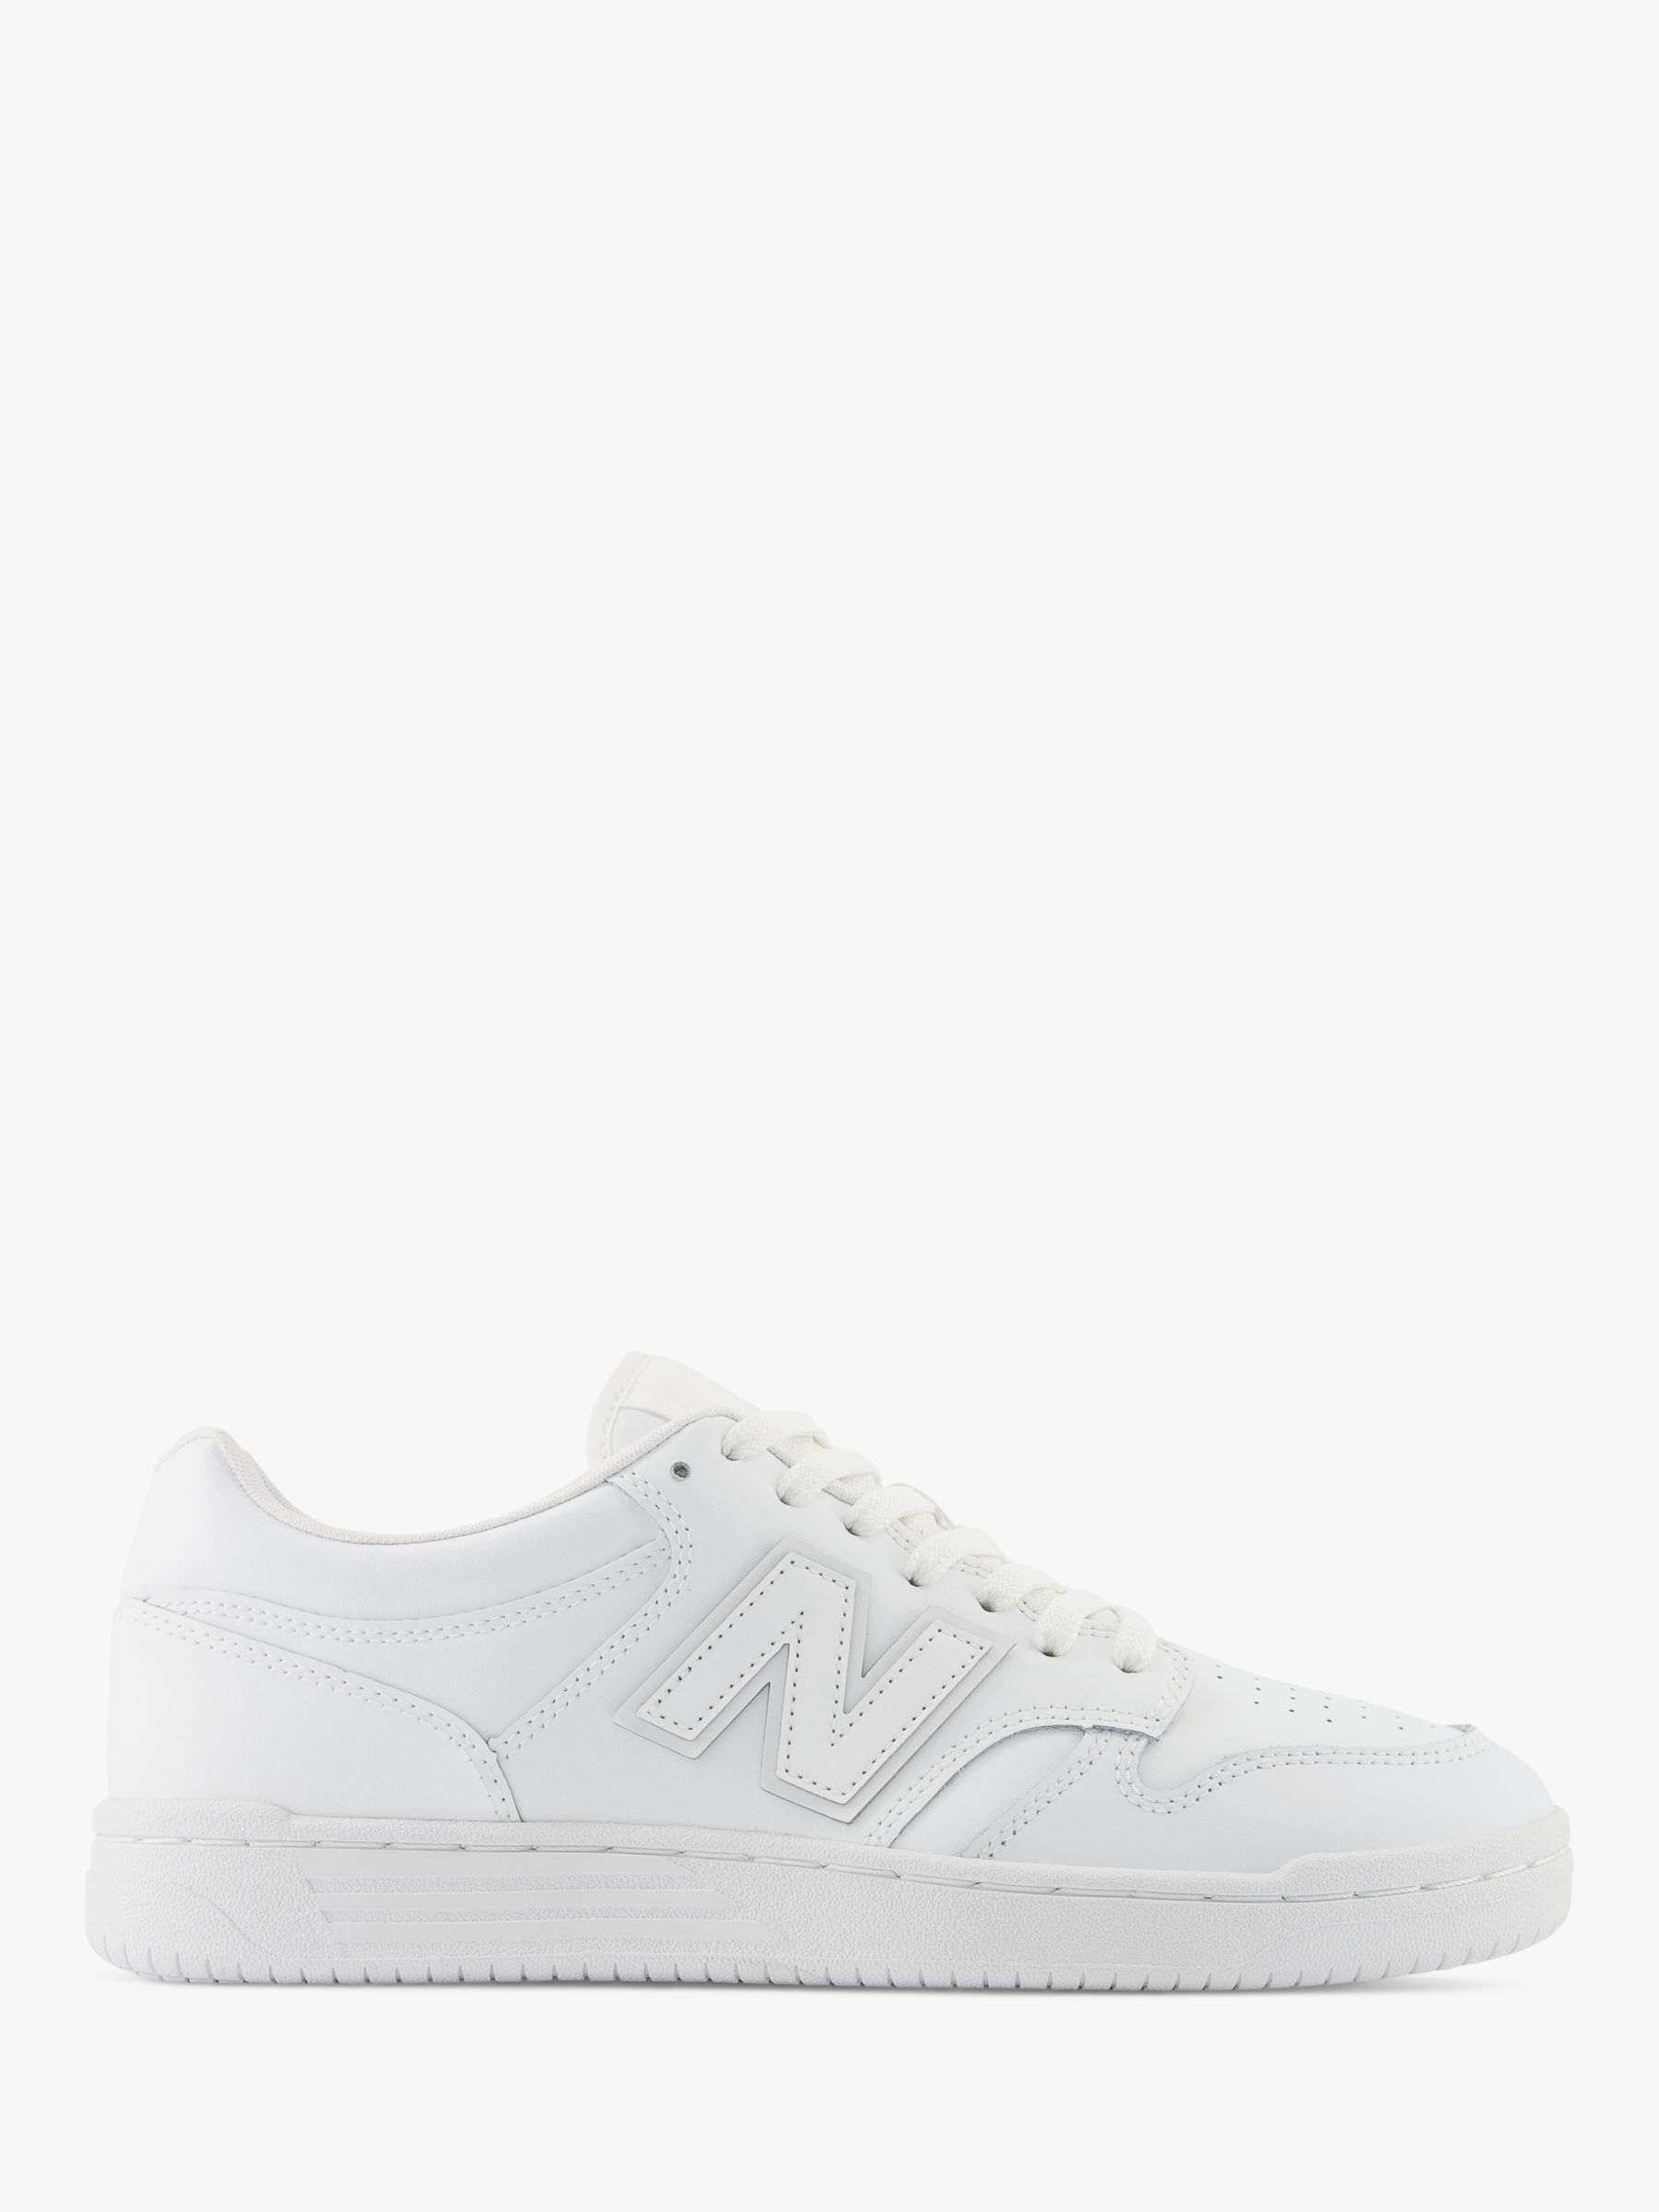 Кожаные кроссовки на шнуровке New Balance 480, белые